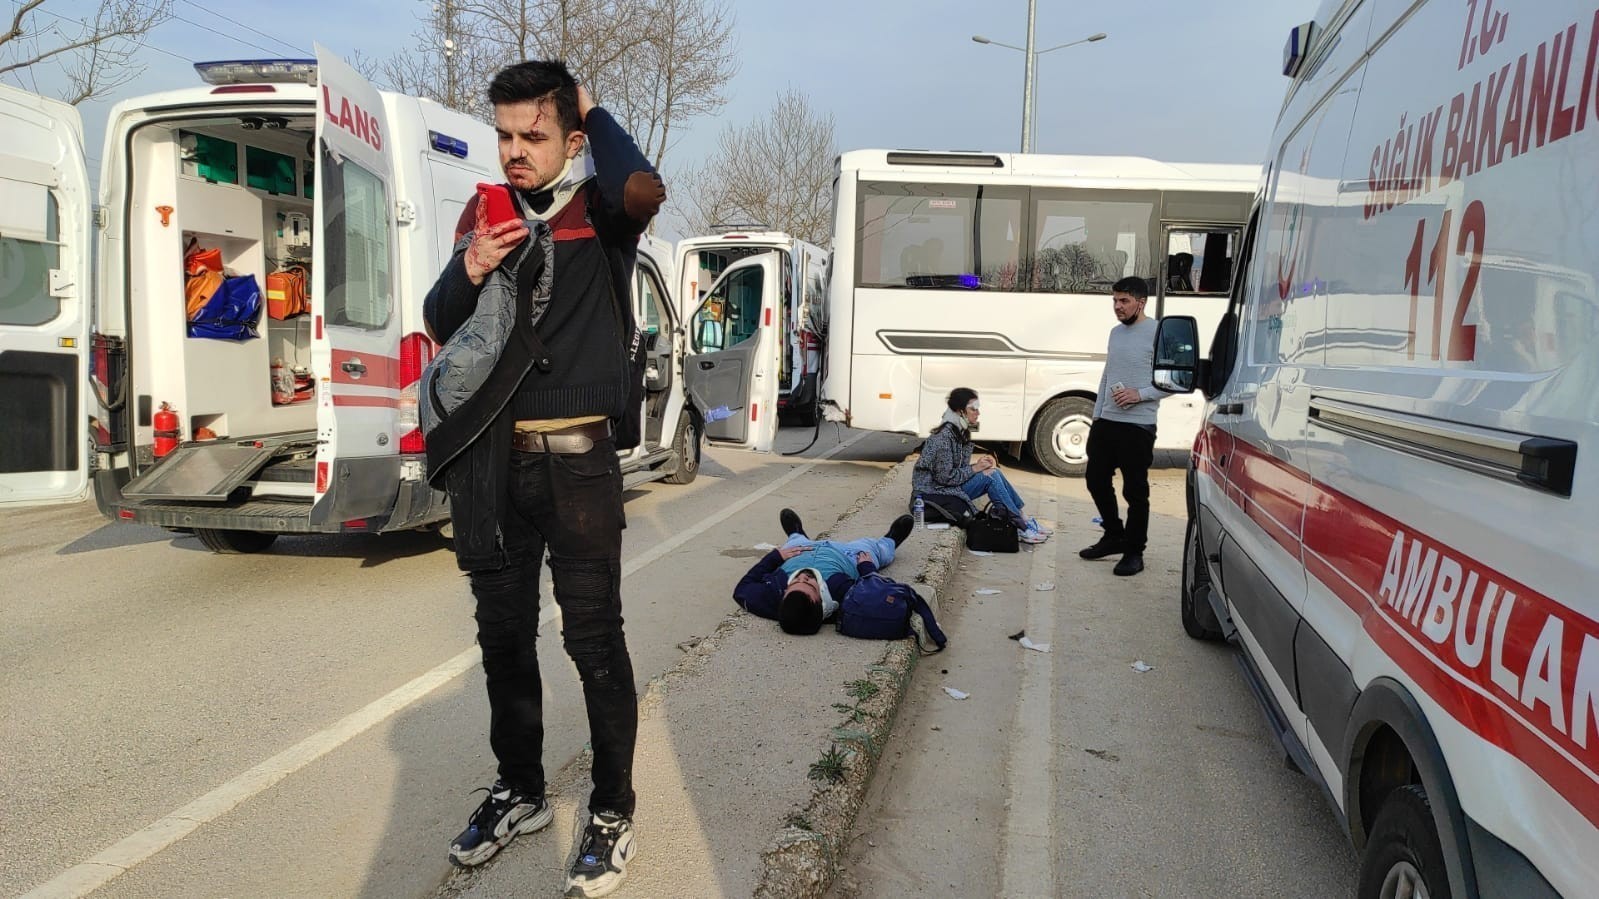 Bursa’nın Kestel ilçesinde 4 kişinin öldüğü, 22 kişinin yaralandığı trafik kazasına ilişkin açılan davada tutuklu yargılanan tır şoförü, "Kaza ...